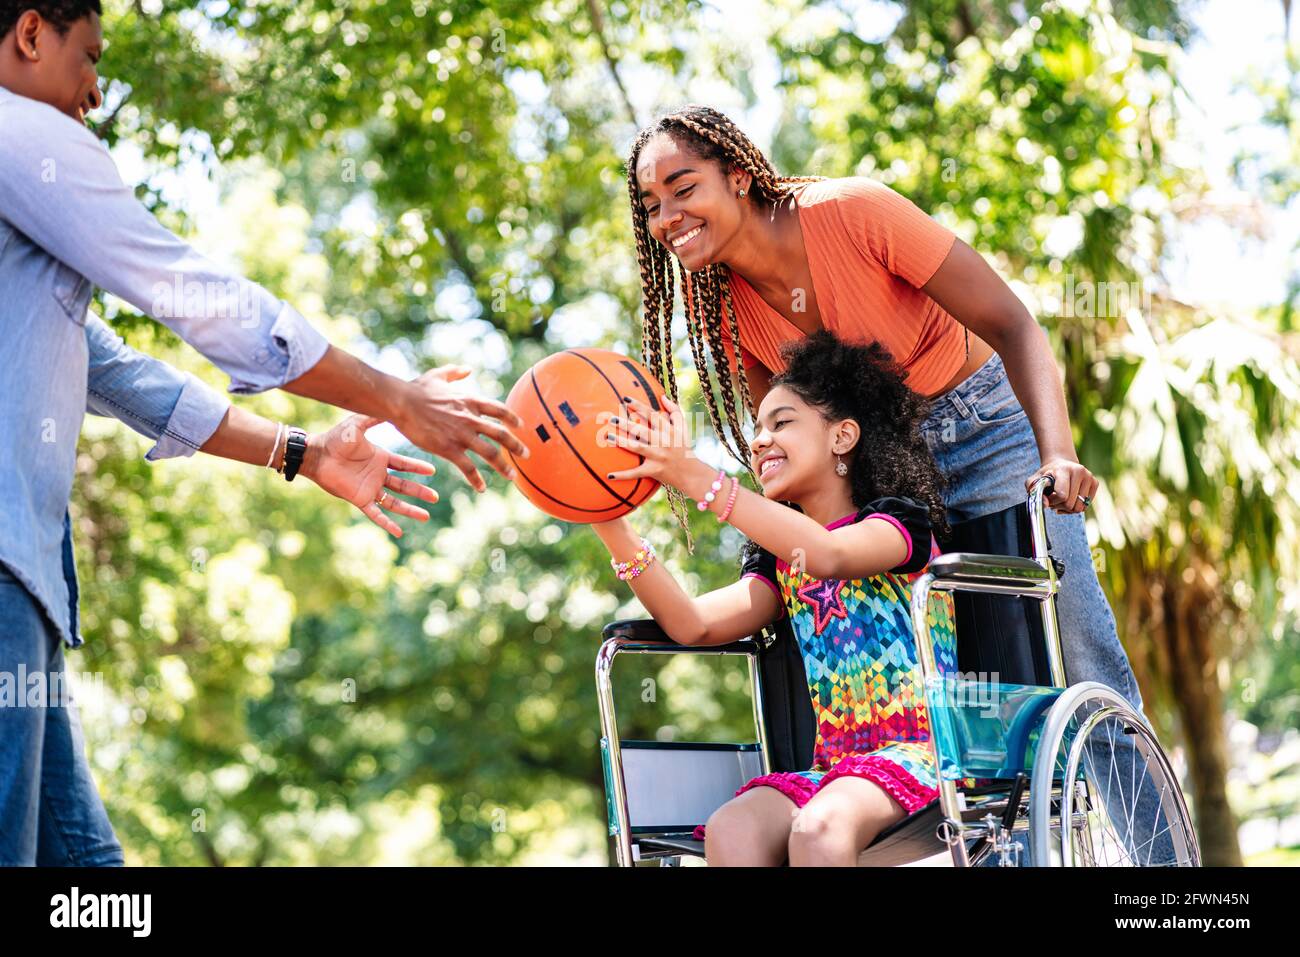 Ragazza in sedia a rotelle che gioca a basket con la sua famiglia. Foto Stock